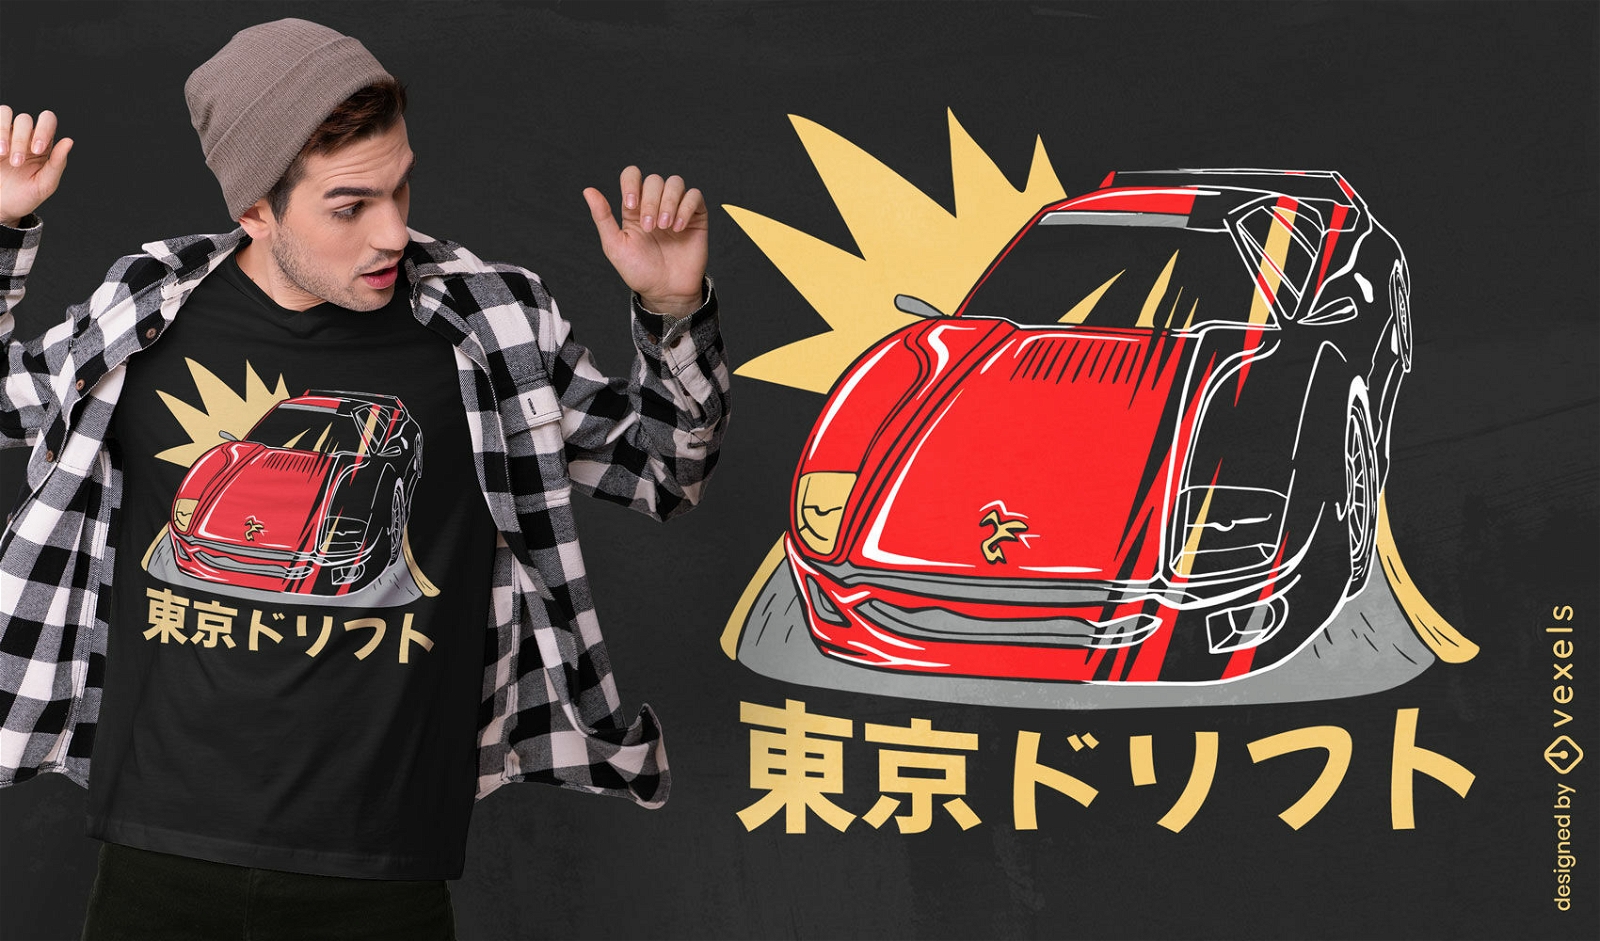 Dise?o de camiseta de auto deportivo japon?s y texto.